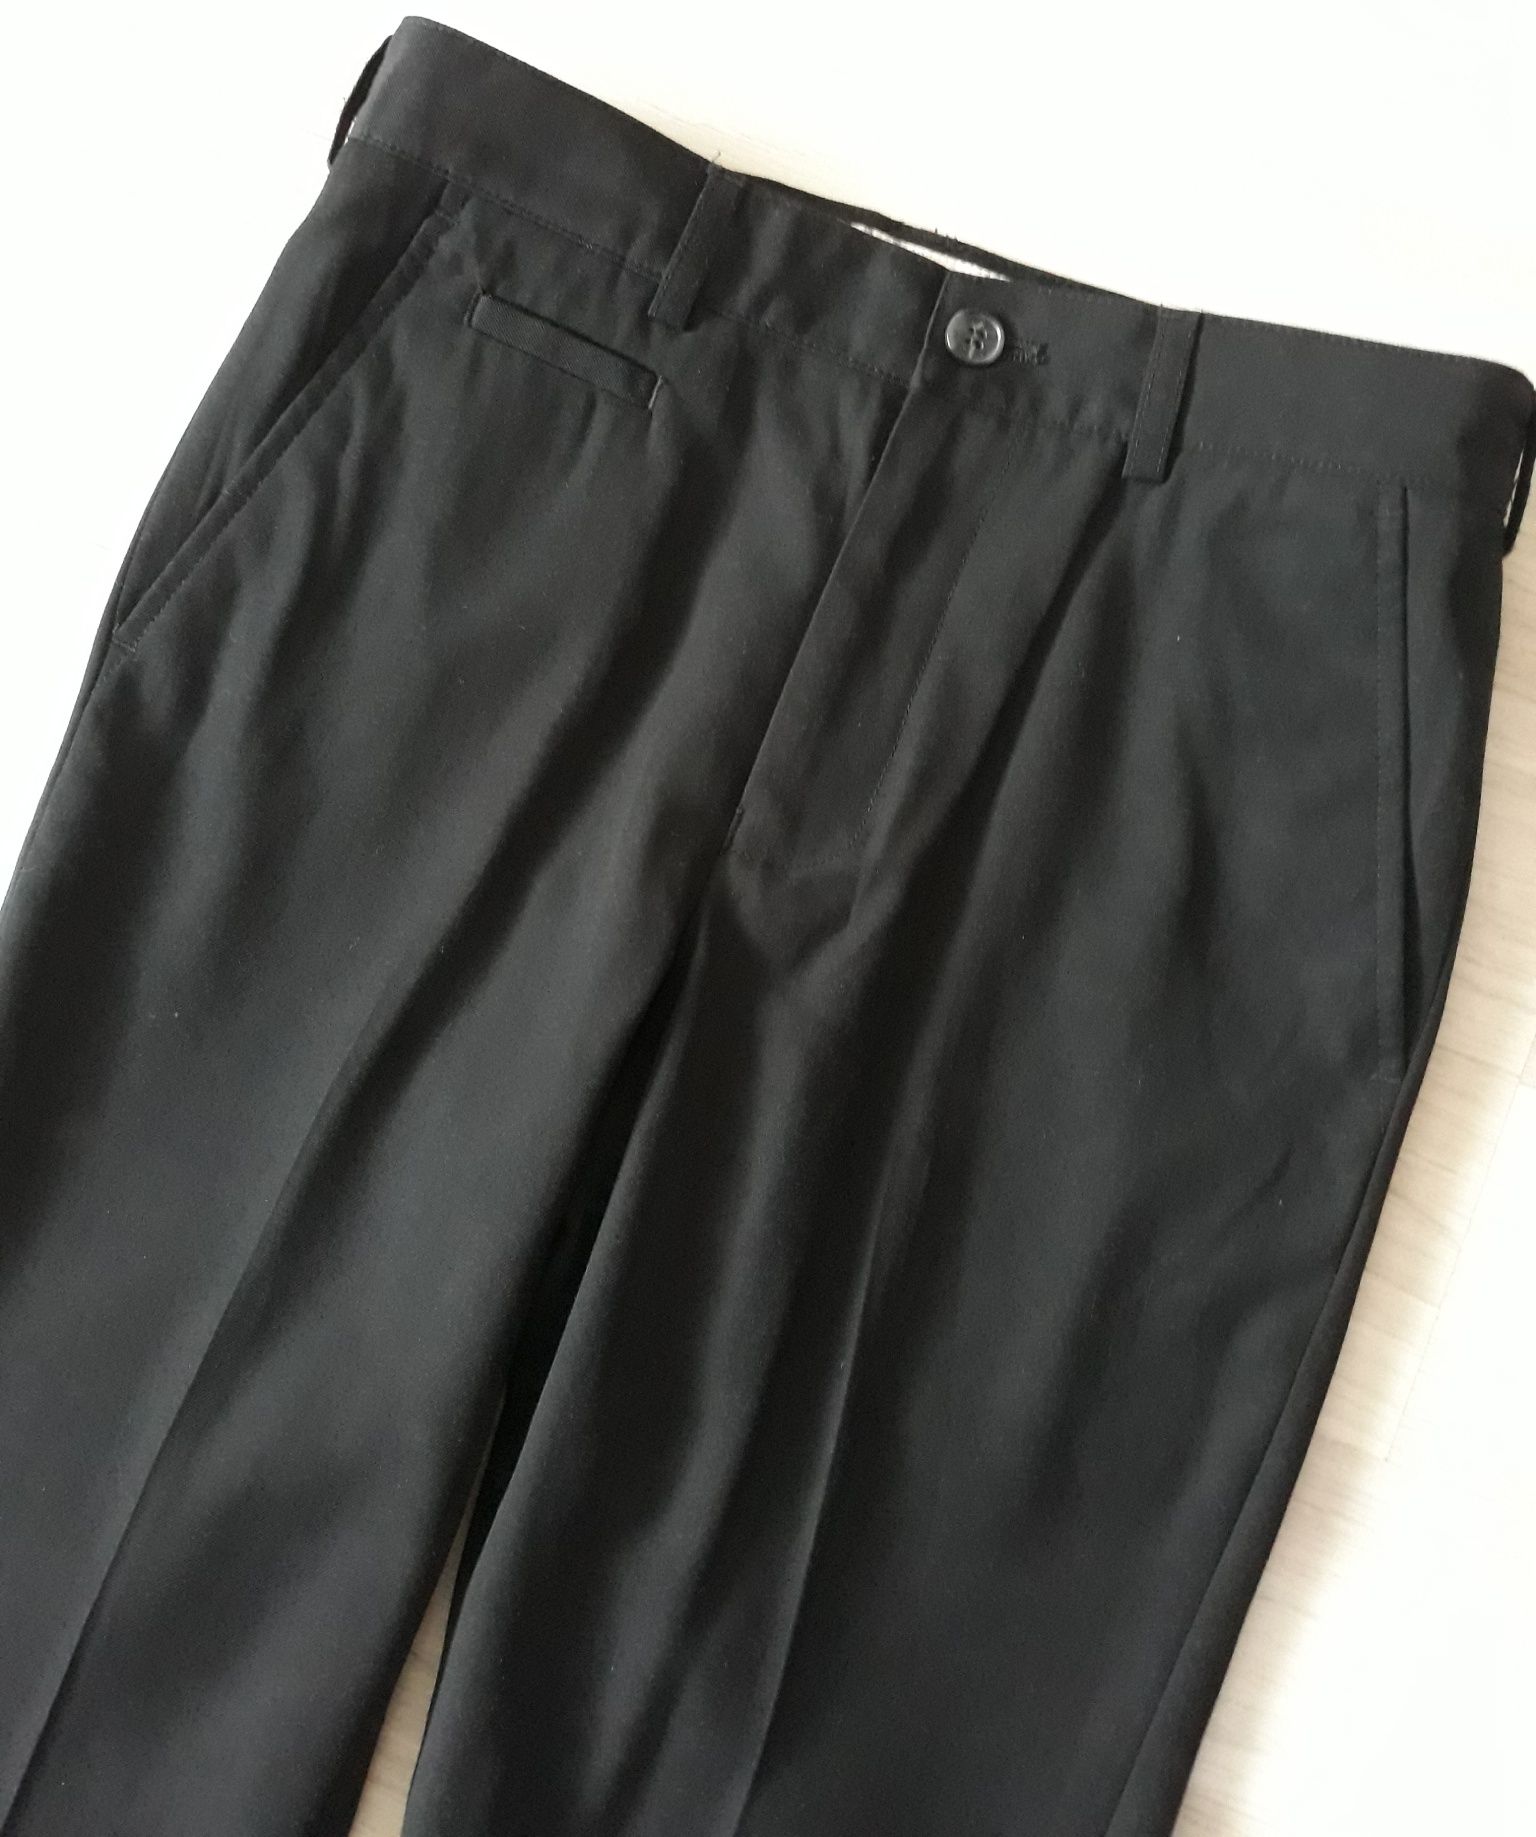 Bhs wizytowe spodnie czarne 128-134cm